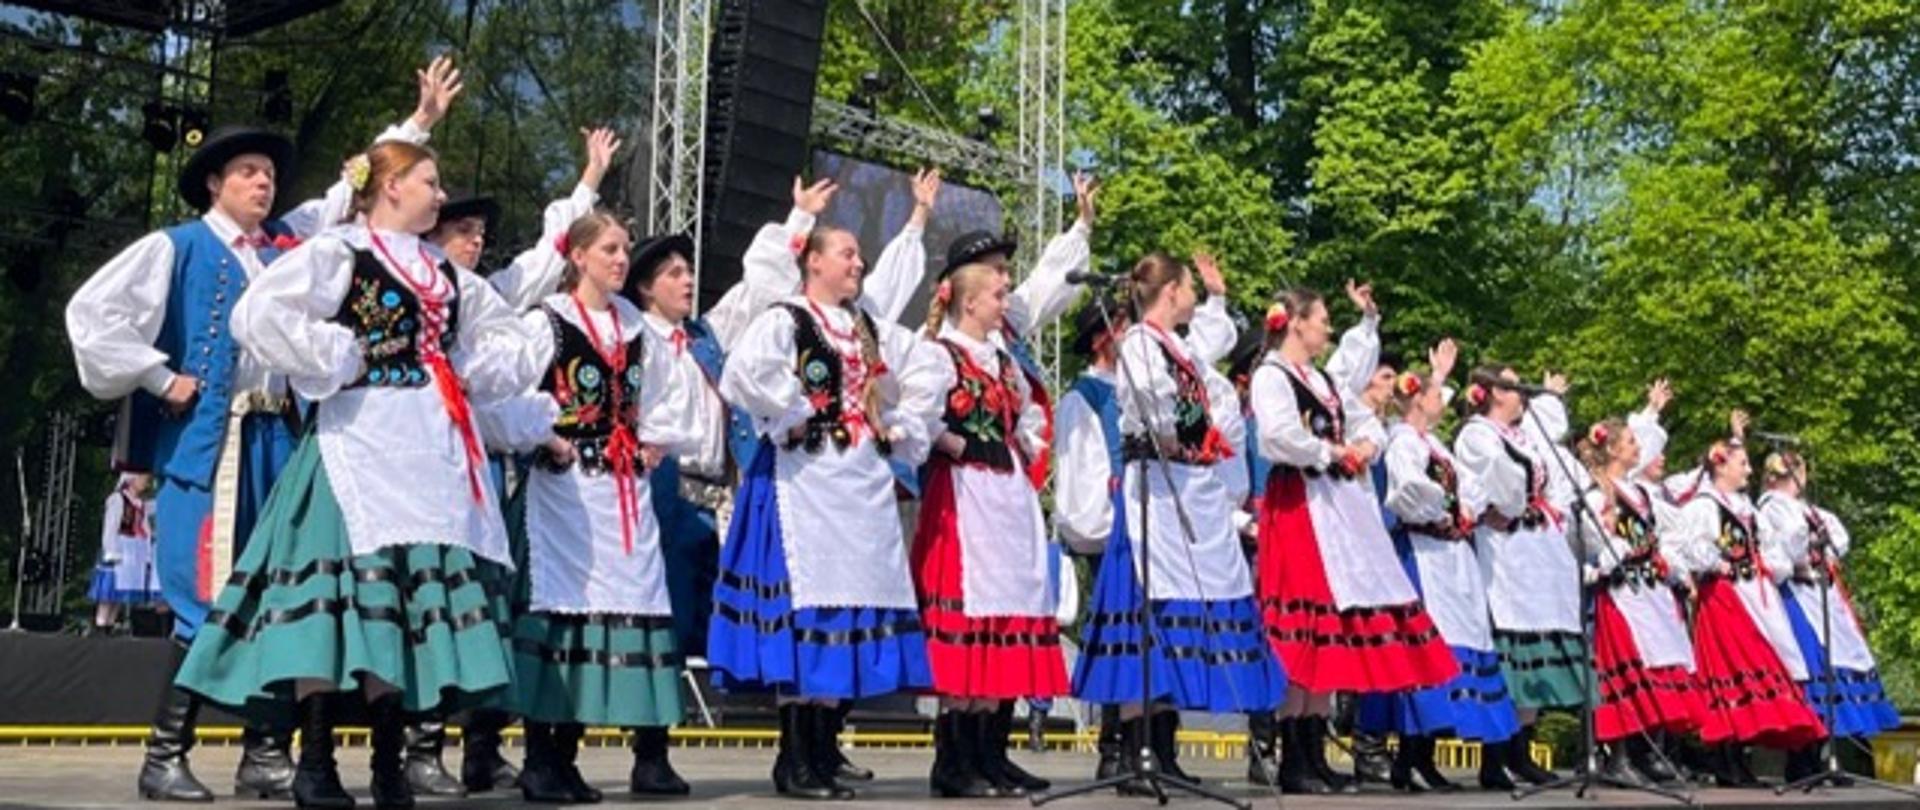 Festiwal Polskiego Związku Kulturalno-Oświatowego w Republice Czeskiej
